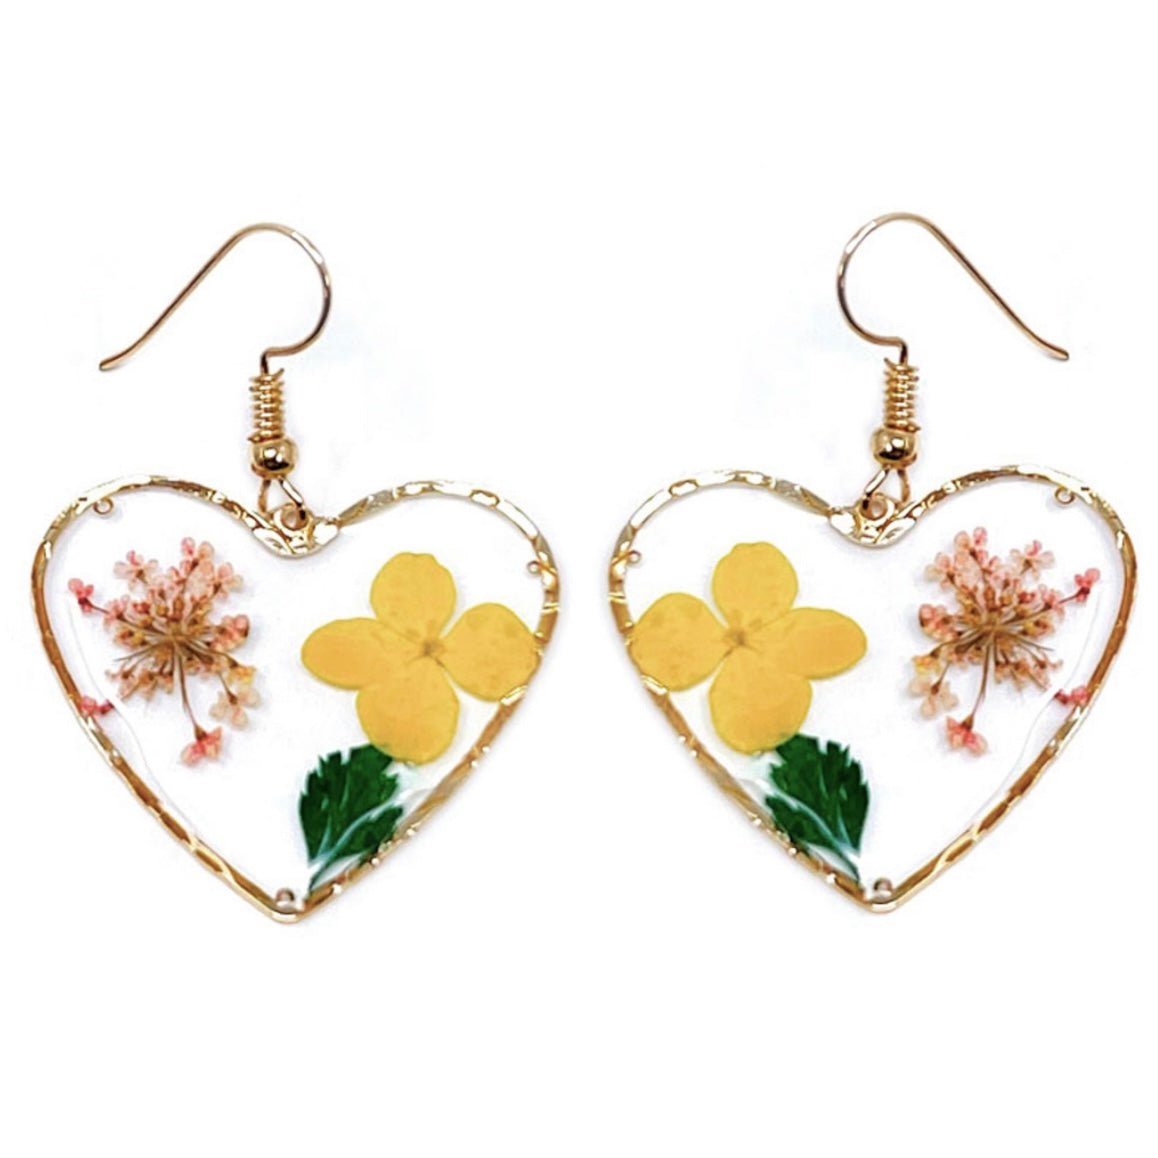 Pressed Flower Field Heart of Gold Earrings